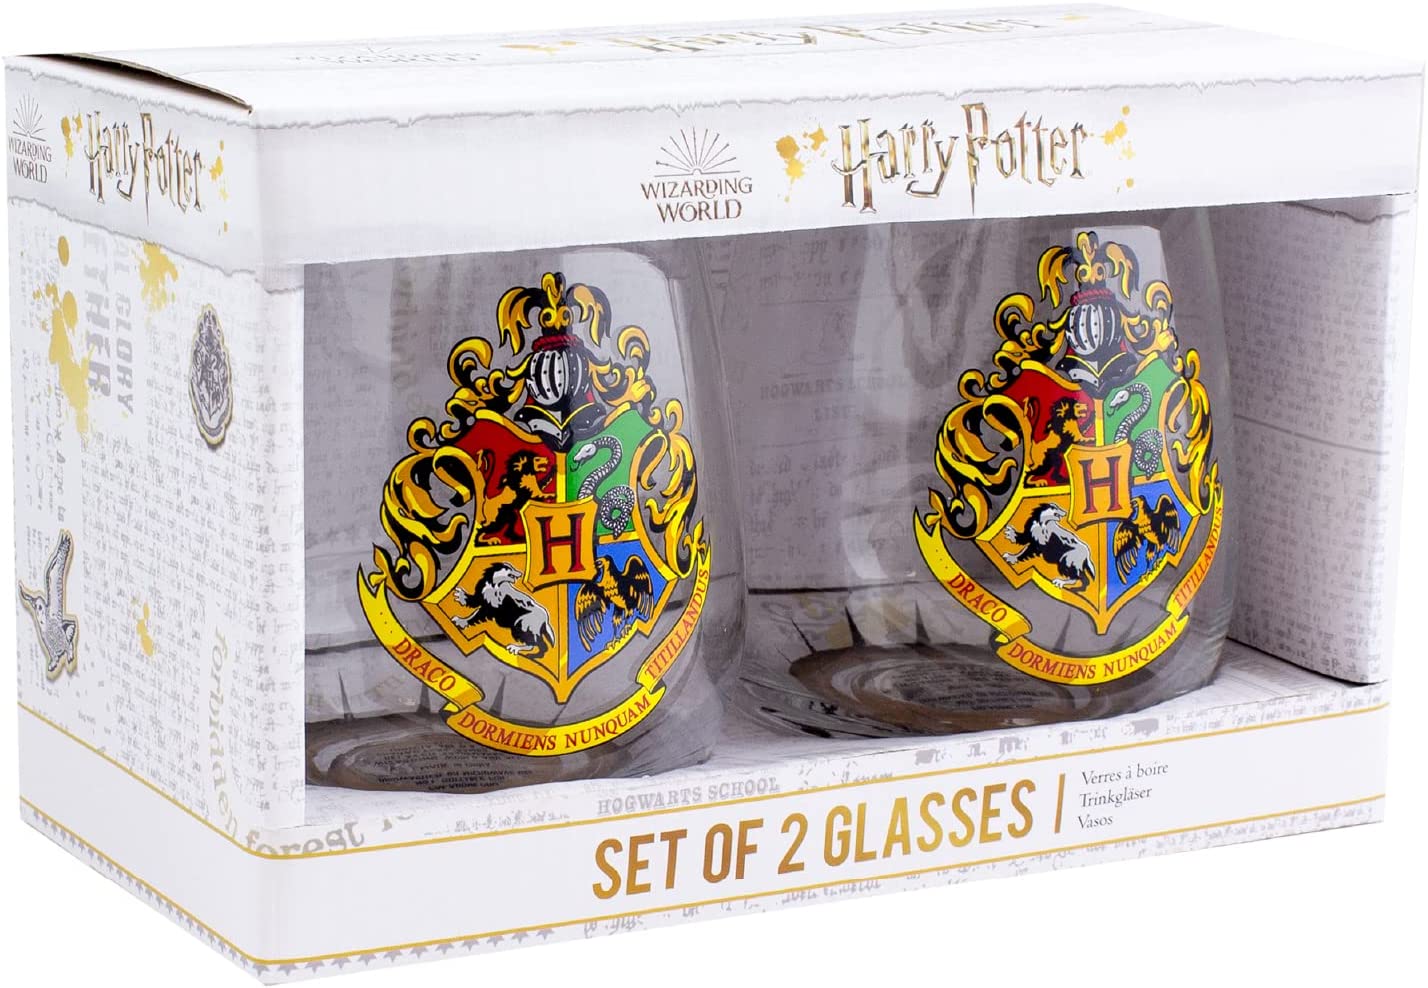 Set of 2 Harry Potter glasses - Hogwarts Crest